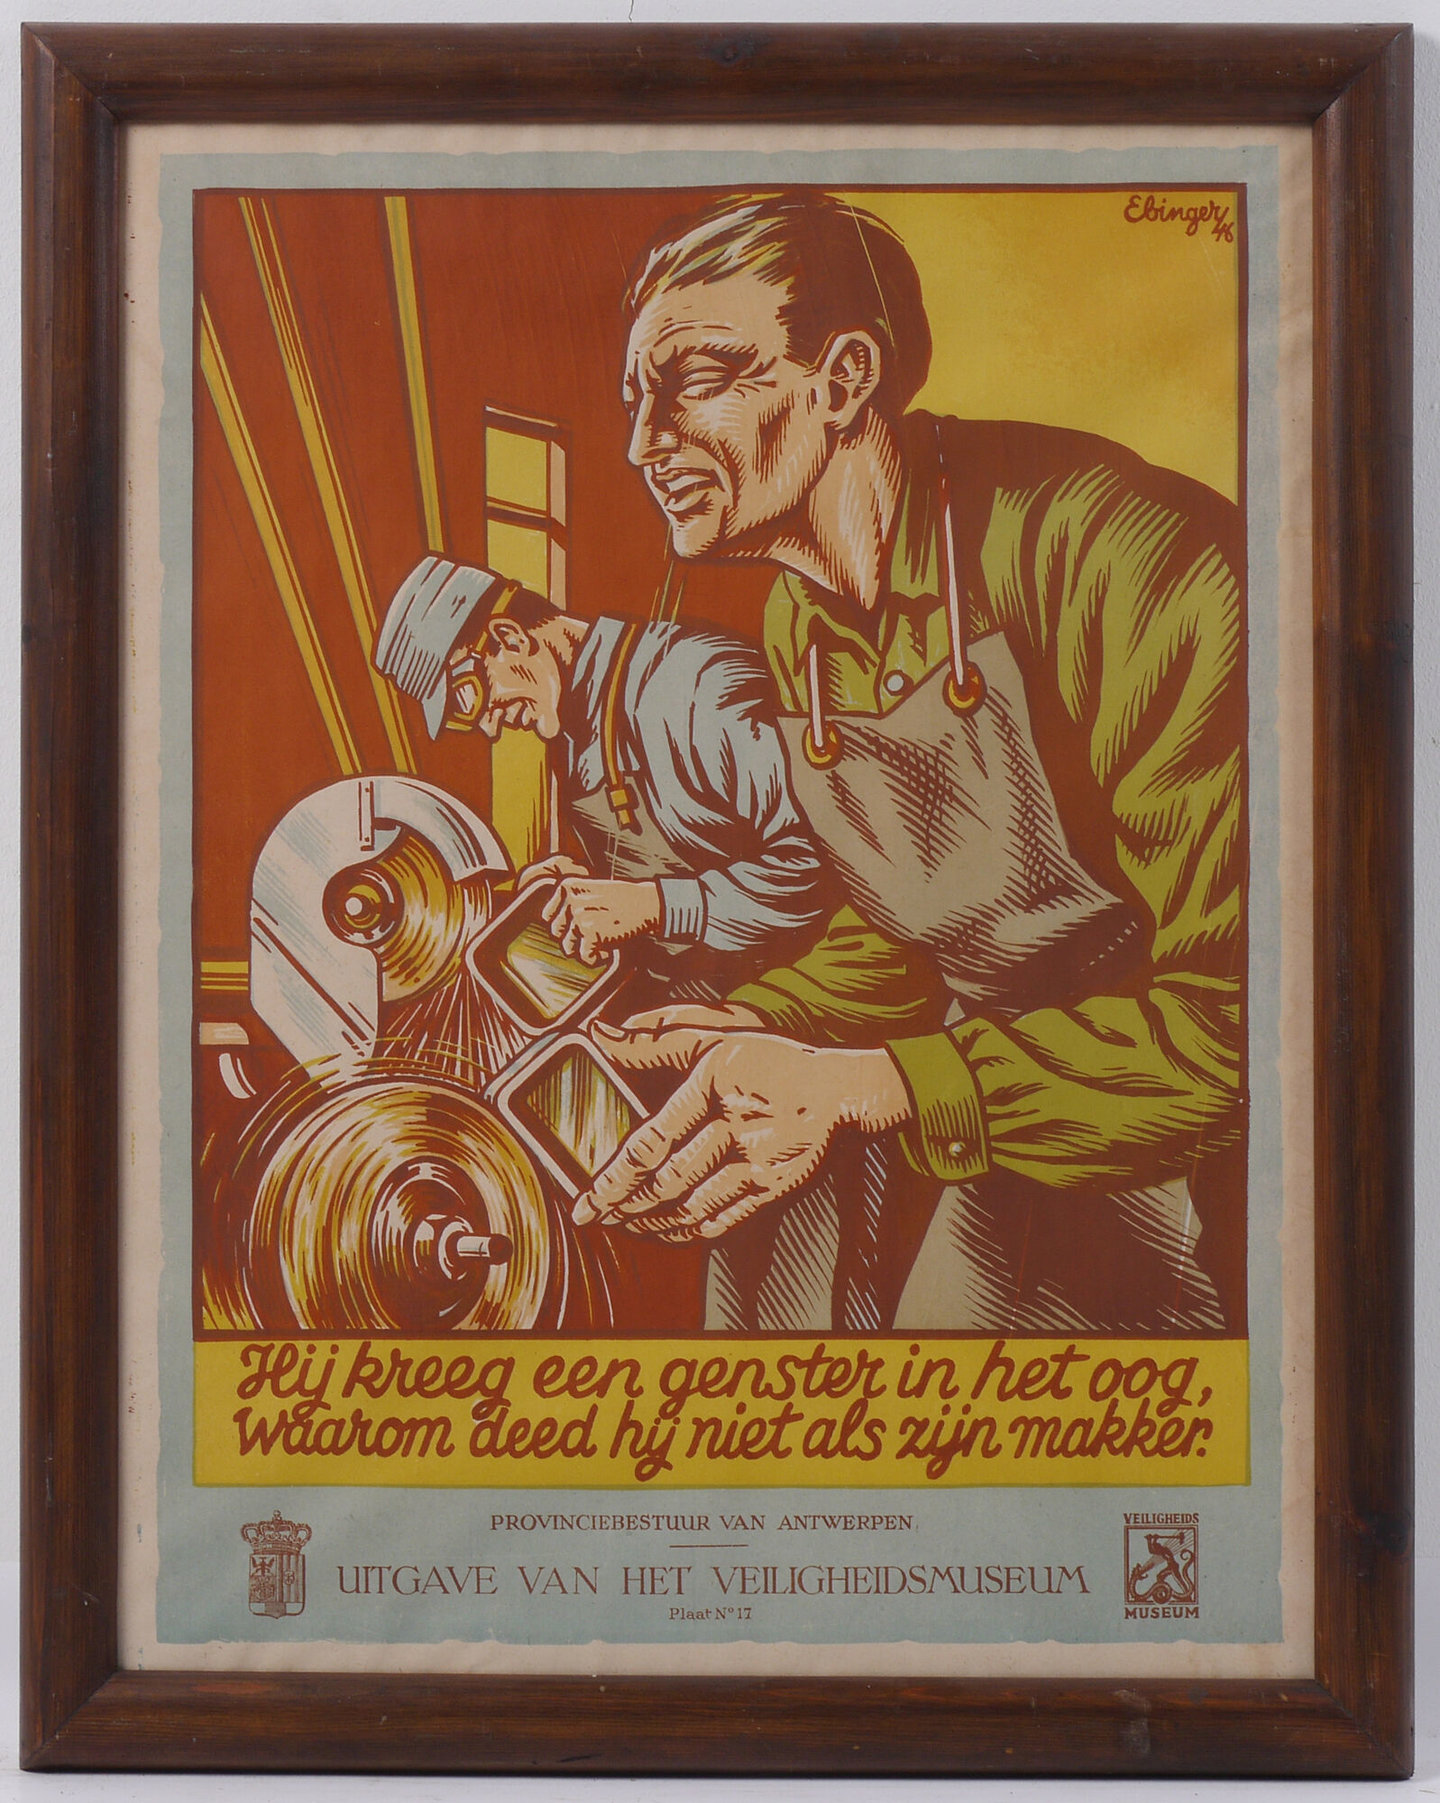 Affiche om de aandacht te vestigen op arbeidsveiligheid